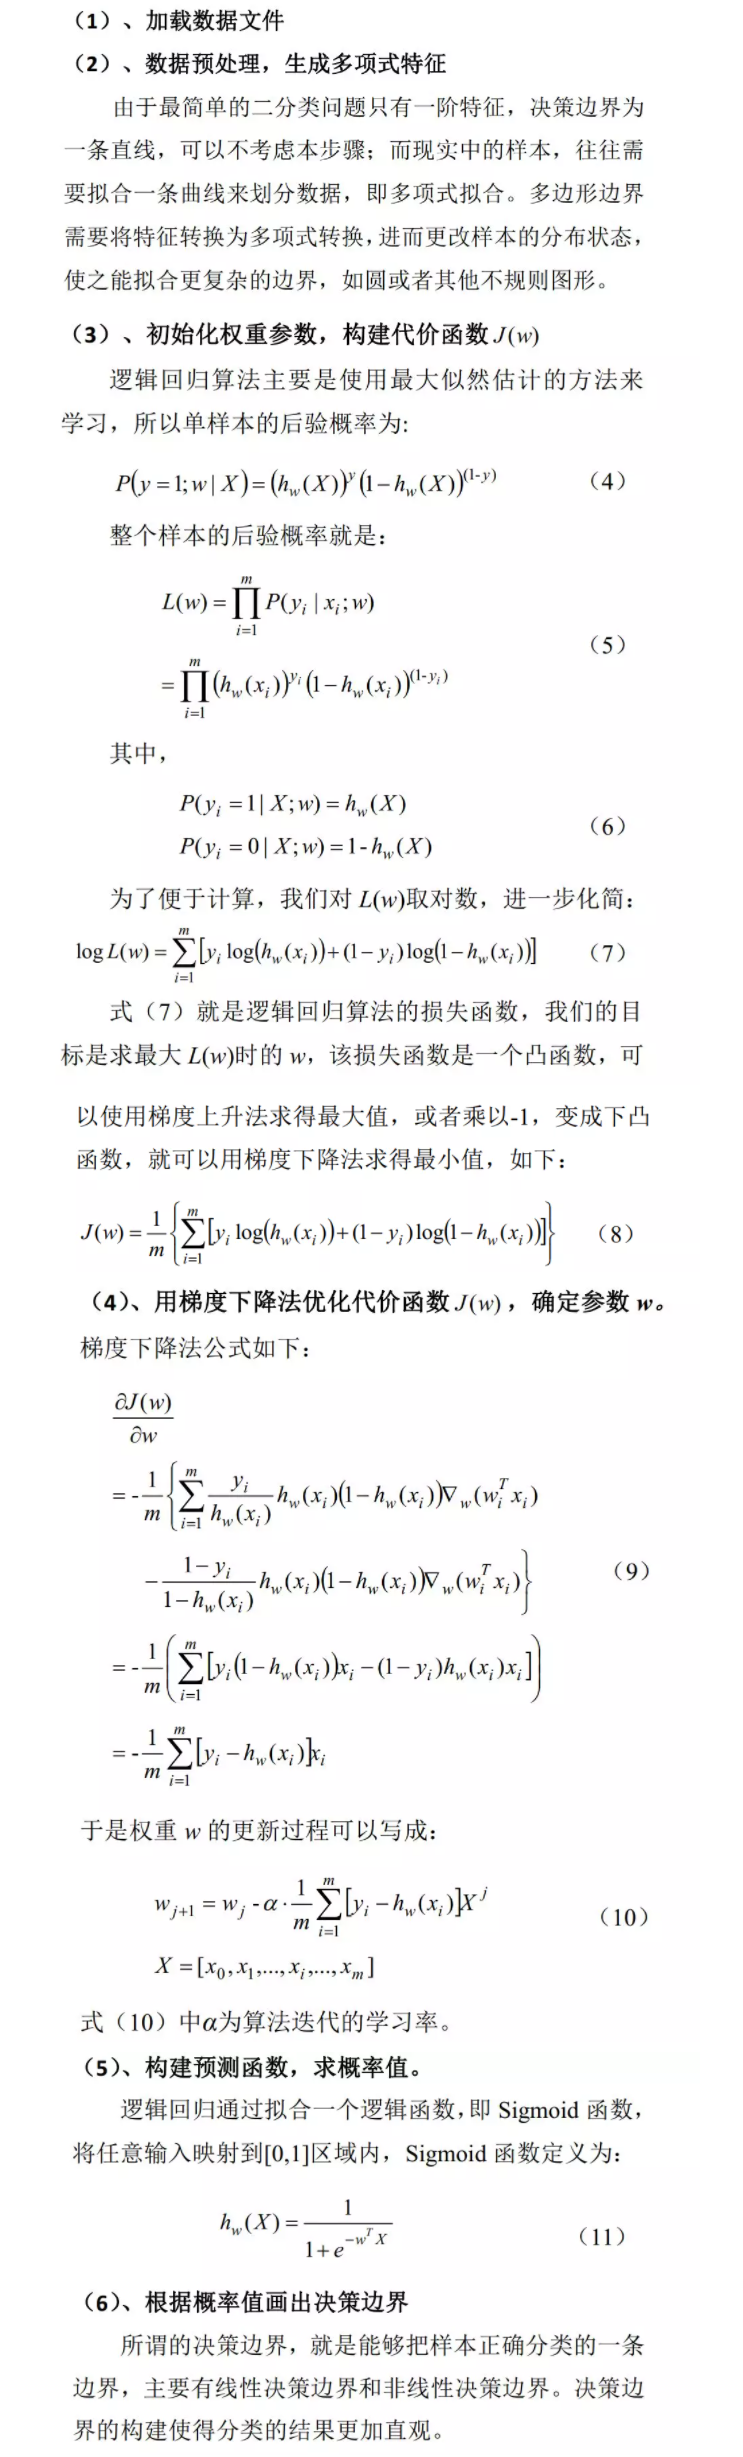 238 - 【机器学习算法】2、逻辑回归——从来源说起 - mp.weixin.qq.com.png